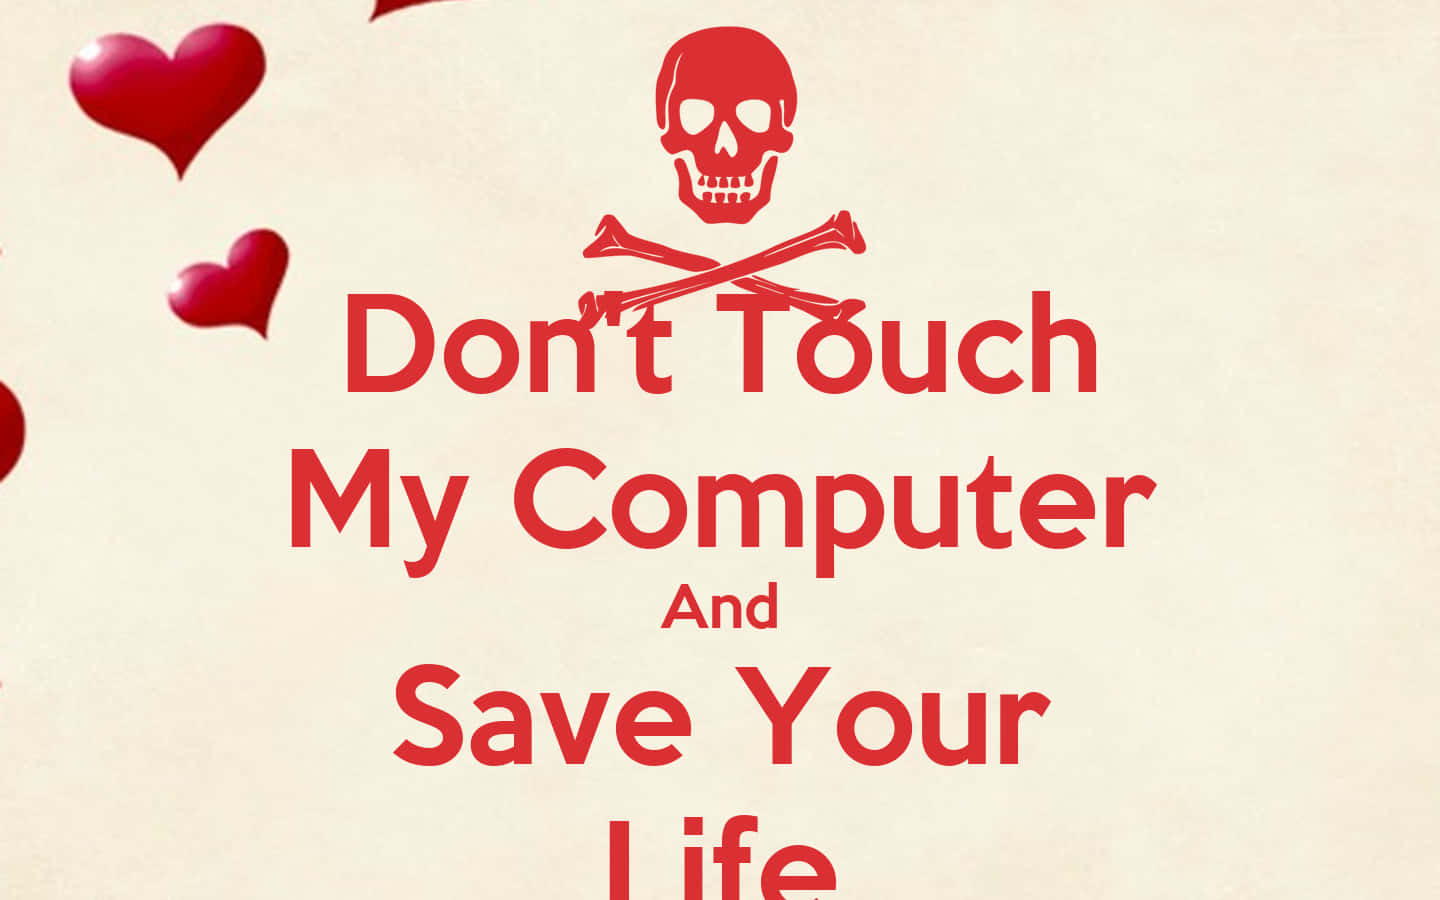 Berühremeinen Computer Nicht Und Rette Dein Leben. Wallpaper